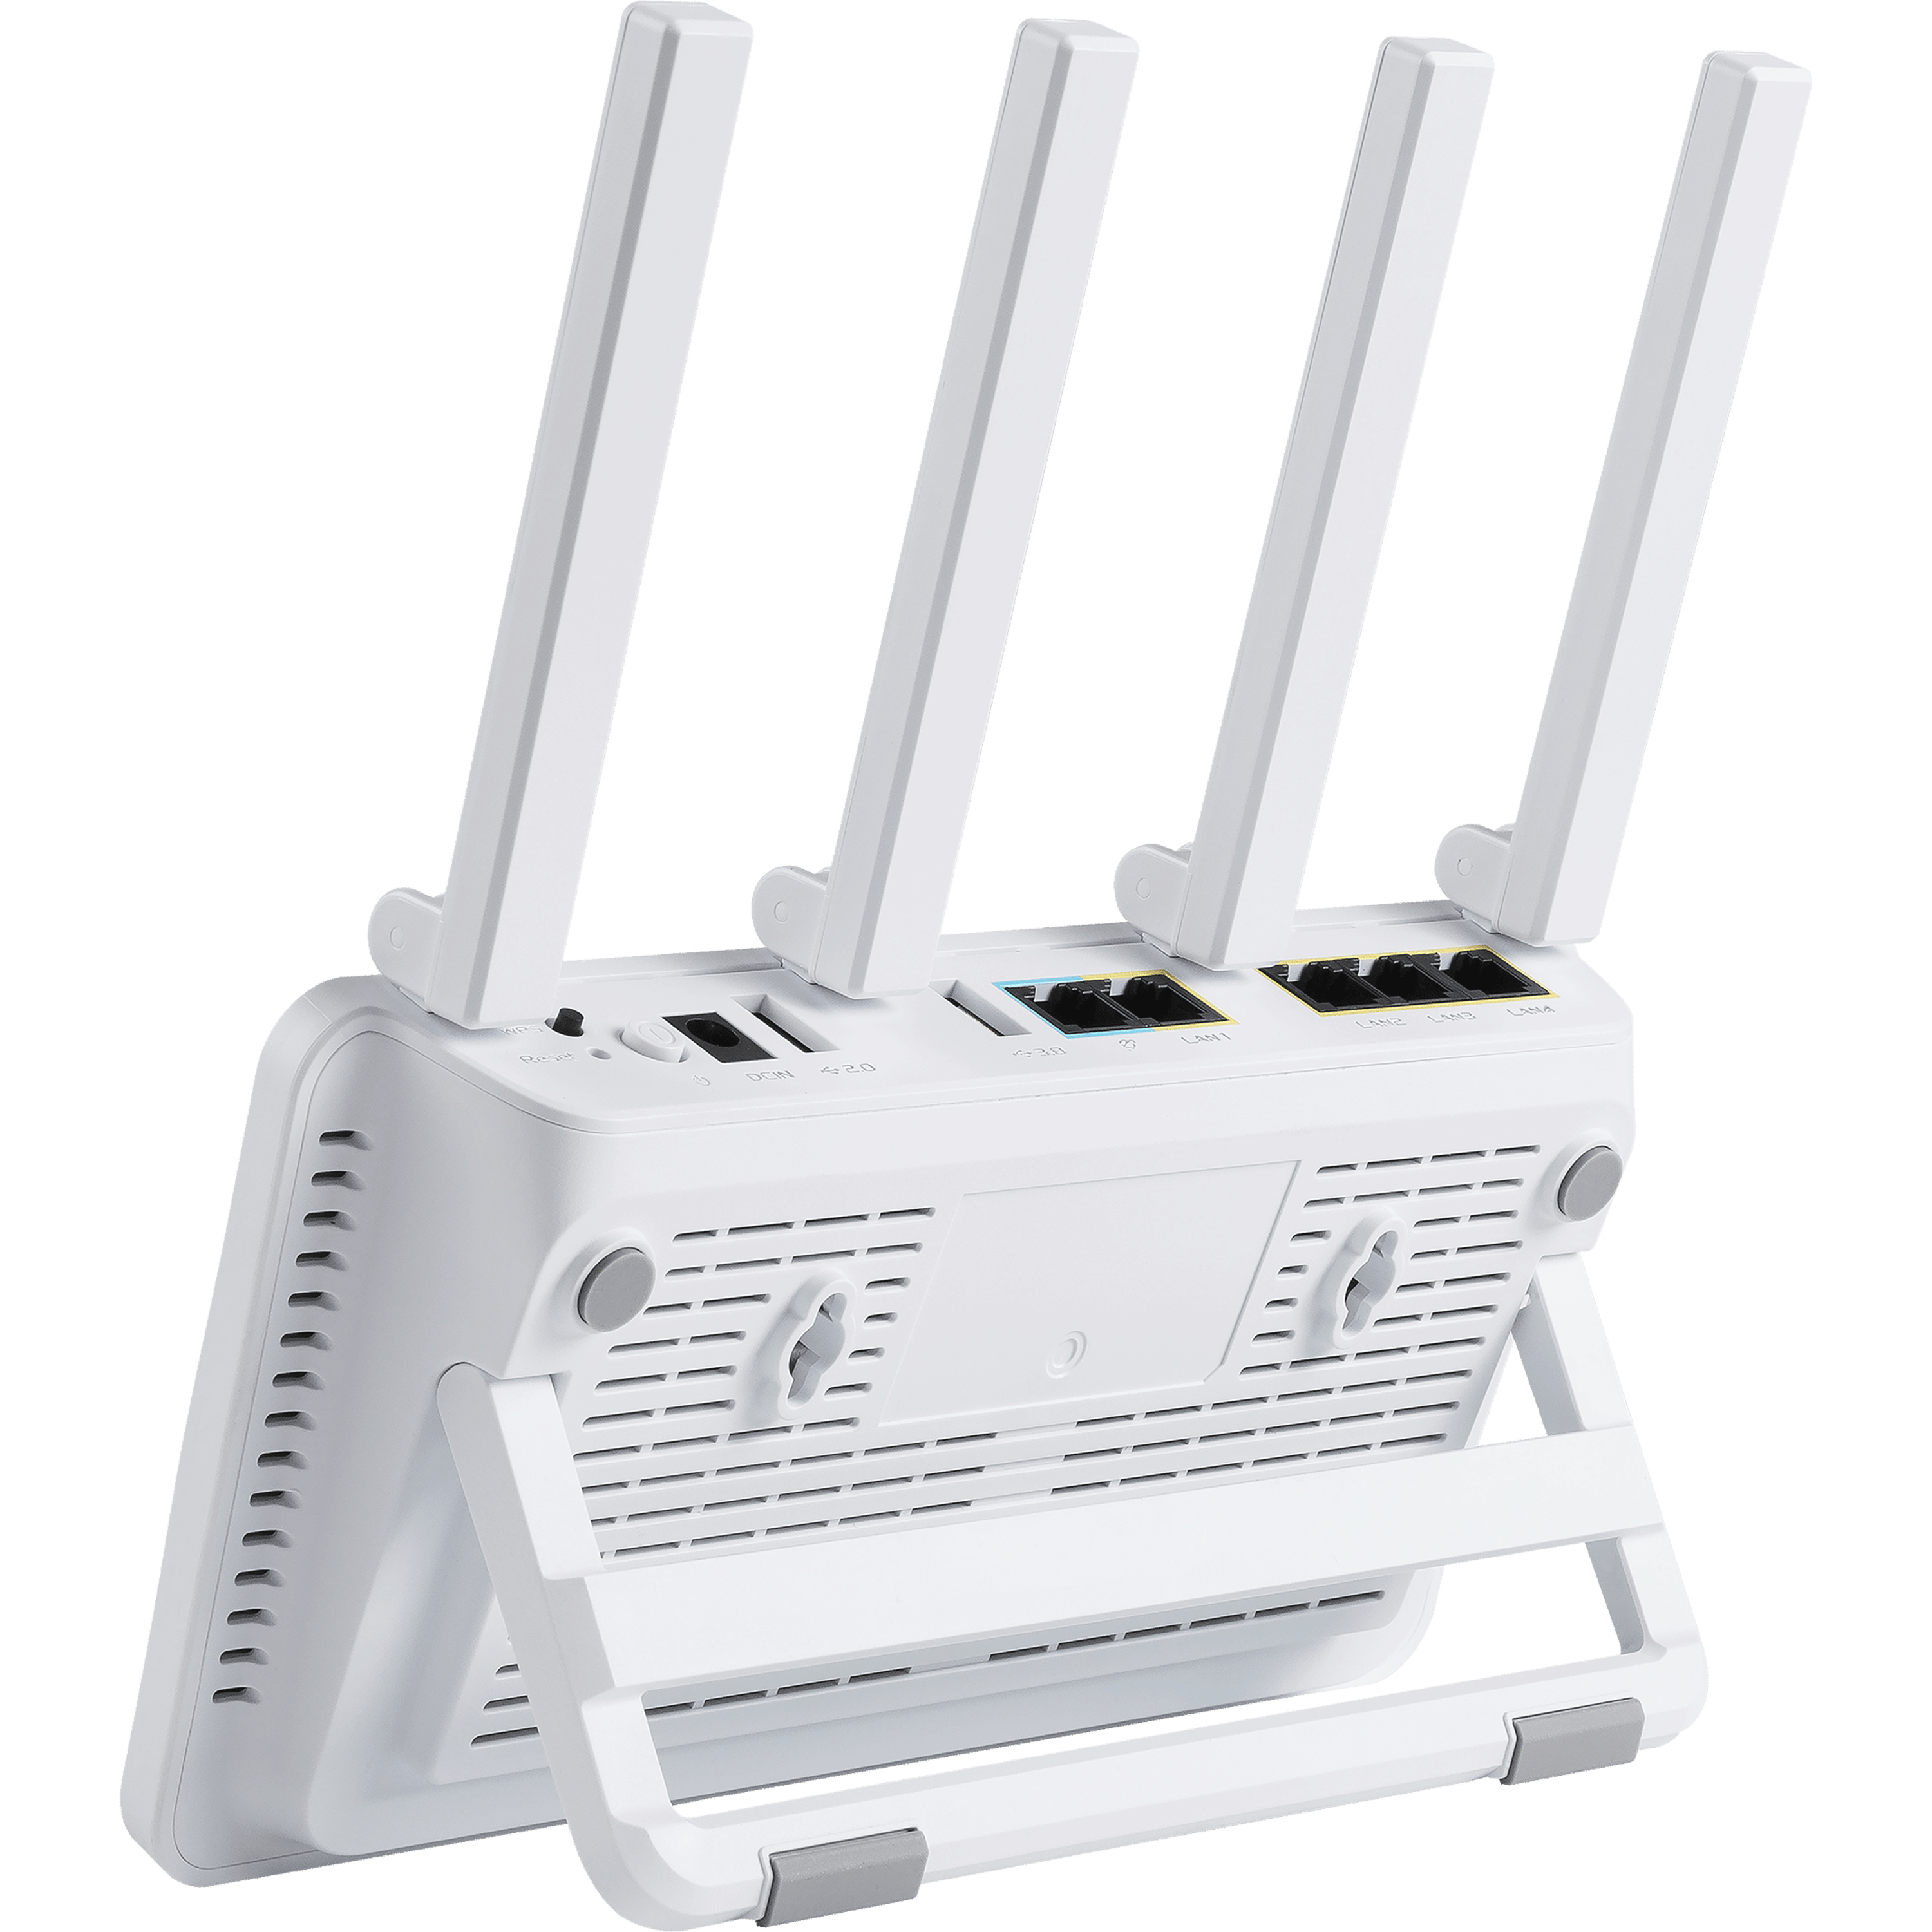 ראוטר אלחוטי Asus ExpertWiFi EBR63 AX3000 WiFi 6 - צבע לבן שלוש שנות אחריות ע